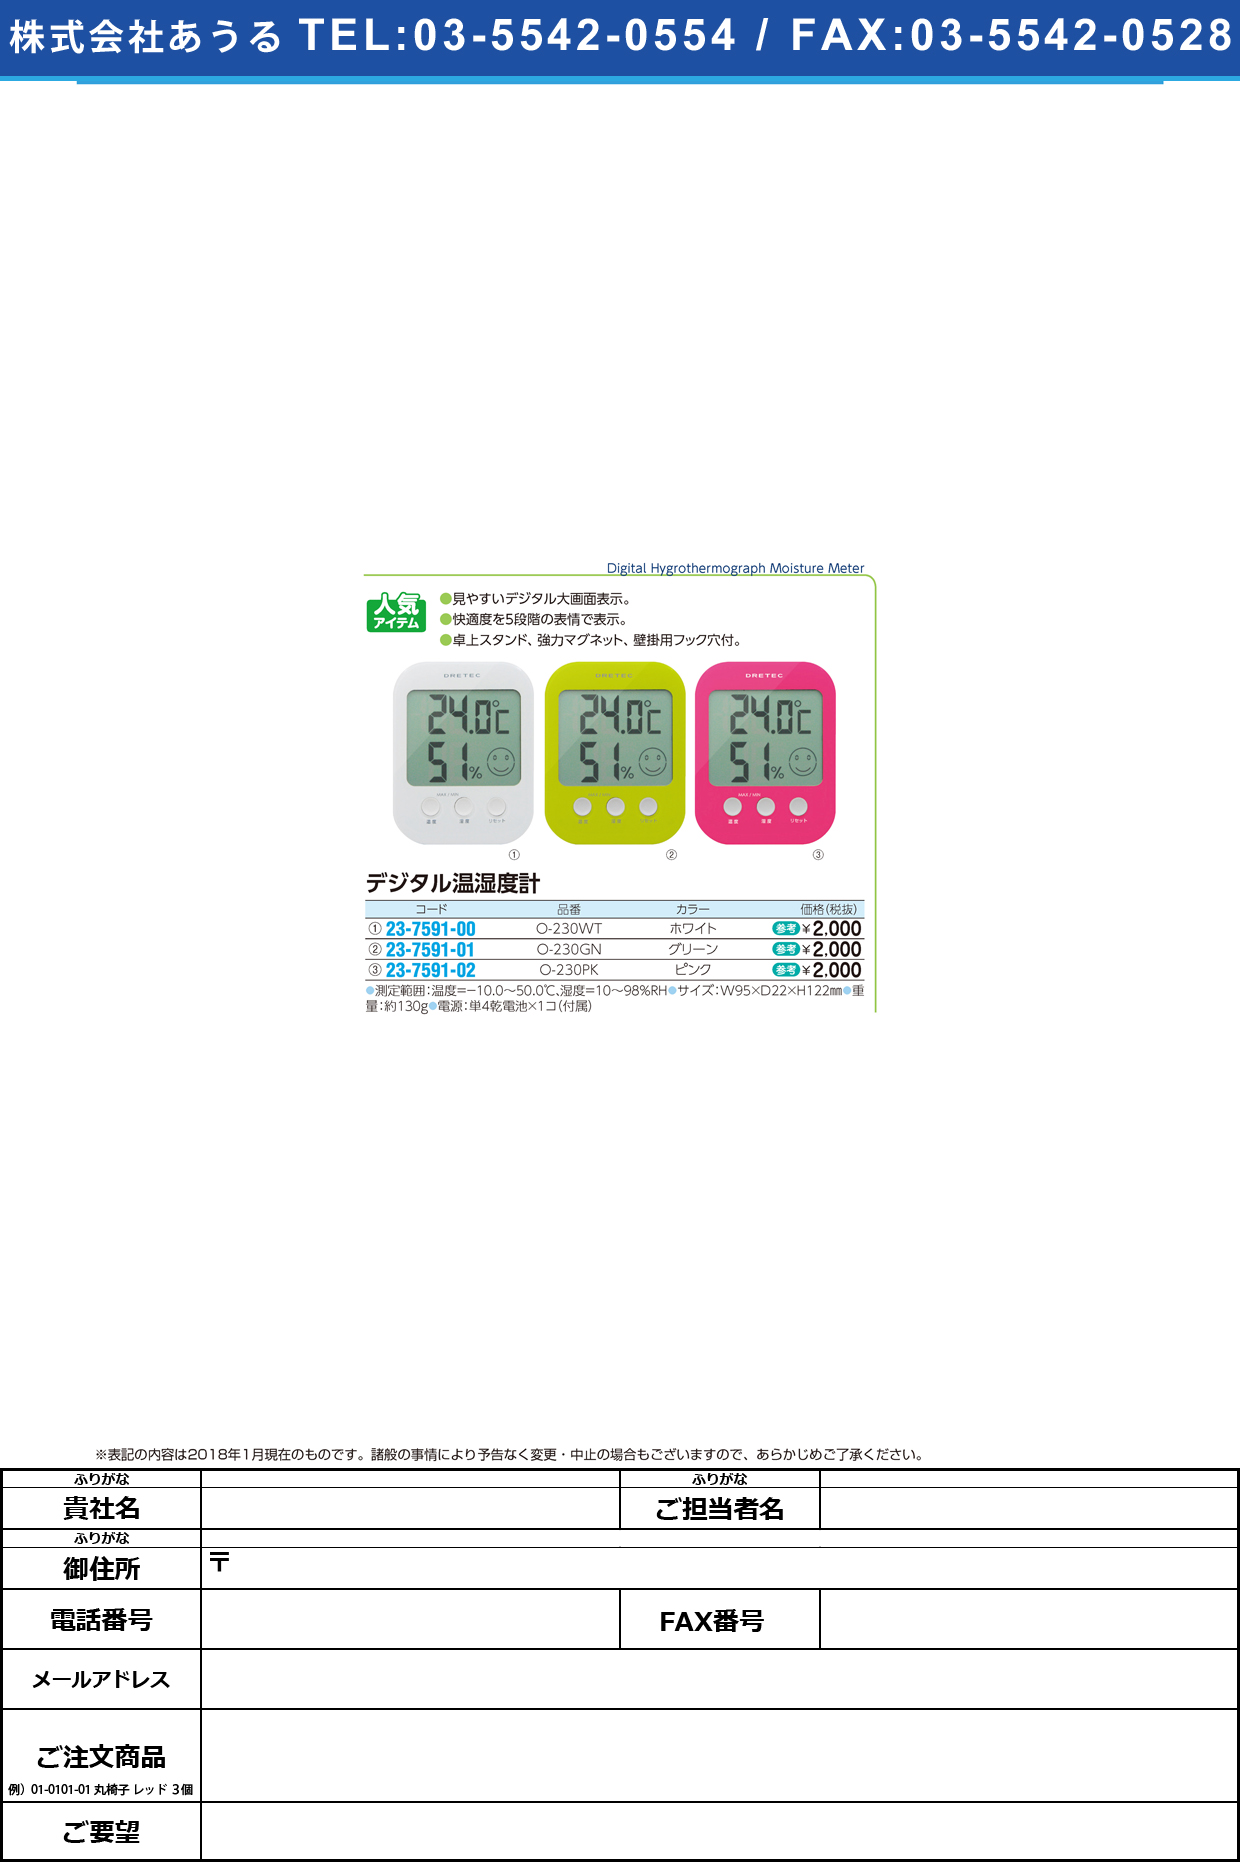 (23-7591-02)デジタル温湿度計オプシス O-230PK(ﾋﾟﾝｸ) ﾃﾞｼﾞﾀﾙｵﾝｼﾂﾄﾞｹｲｵﾌﾟｼｽ(ドリテック)【1個単位】【2018年カタログ商品】